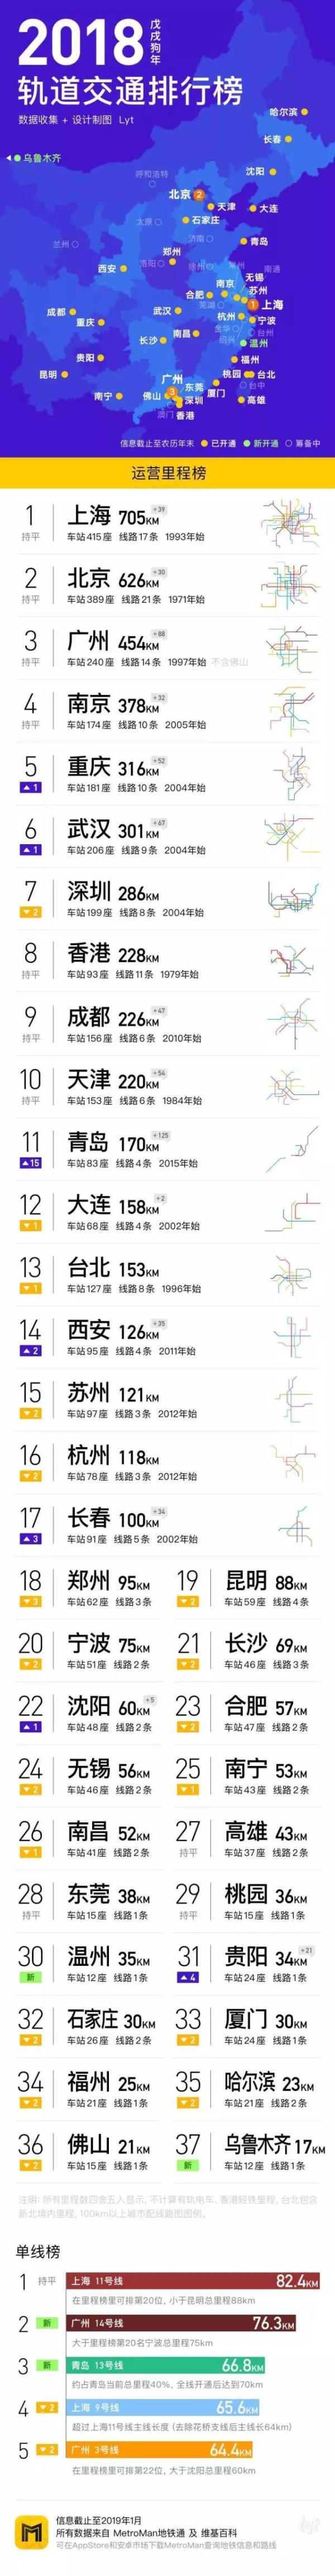 中国城市地铁排名是怎样的 中国城市地铁排名一览